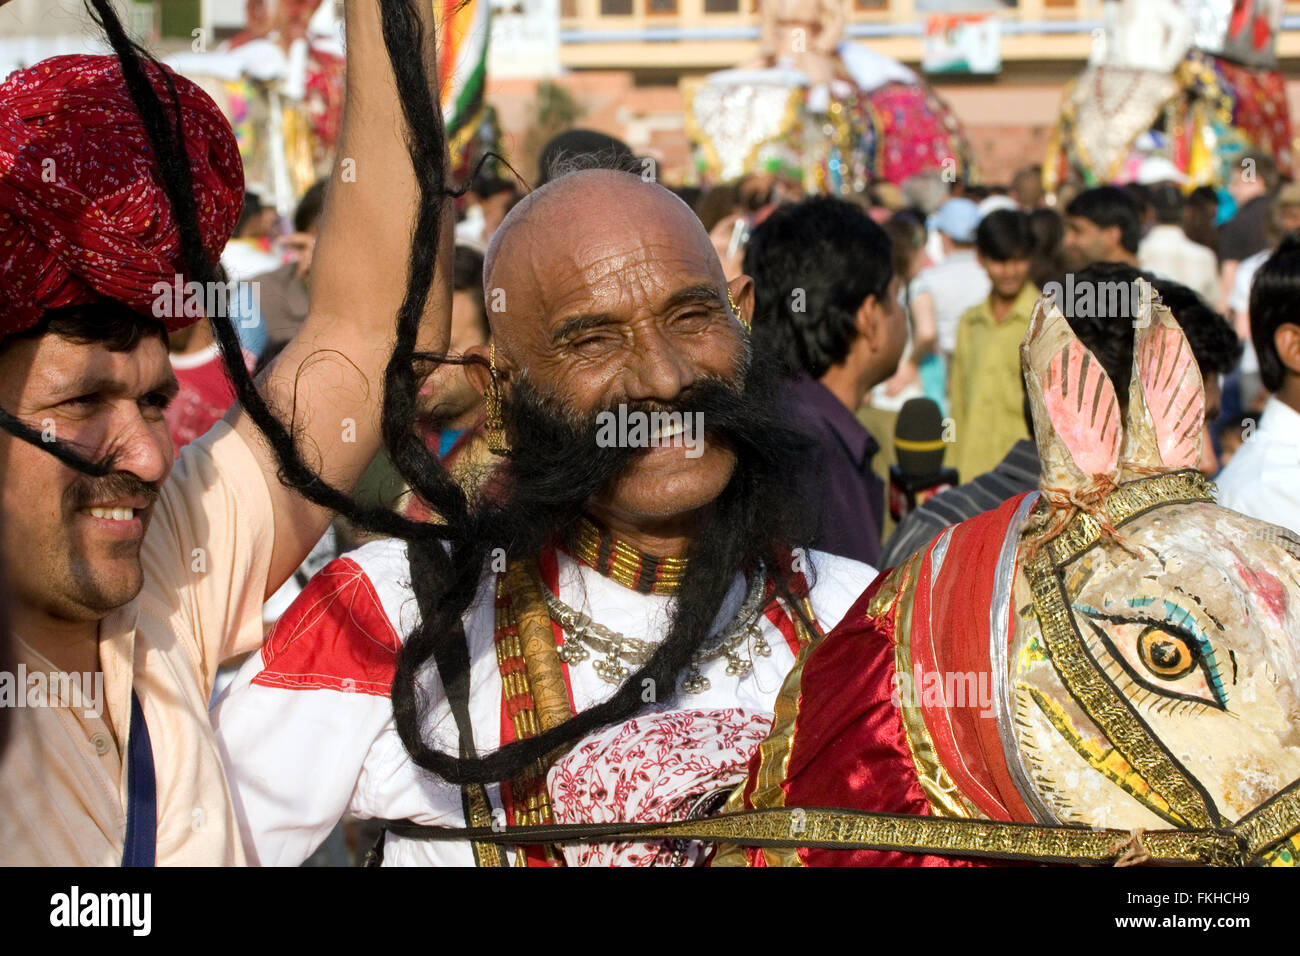 Große, lange, längste, Schnurrbart, Bart, Rajasthani, man, Guy während Elefanten Festival während Holi, Hindu Fest in Jaipur, Rajasthan, Indien, Asien. Stockfoto